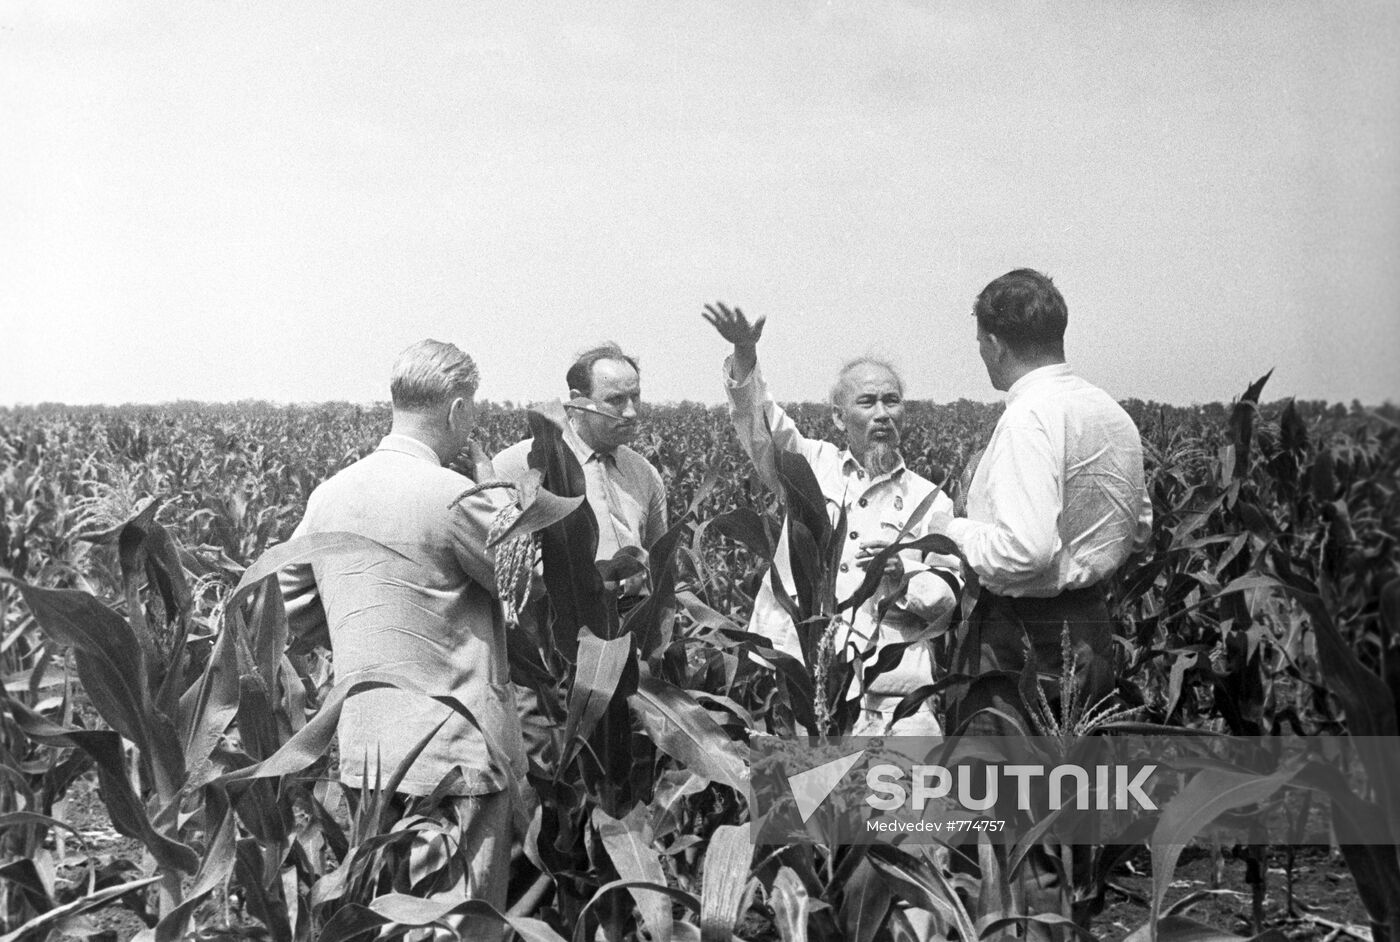 Hồ Chí Minh visits the USSR